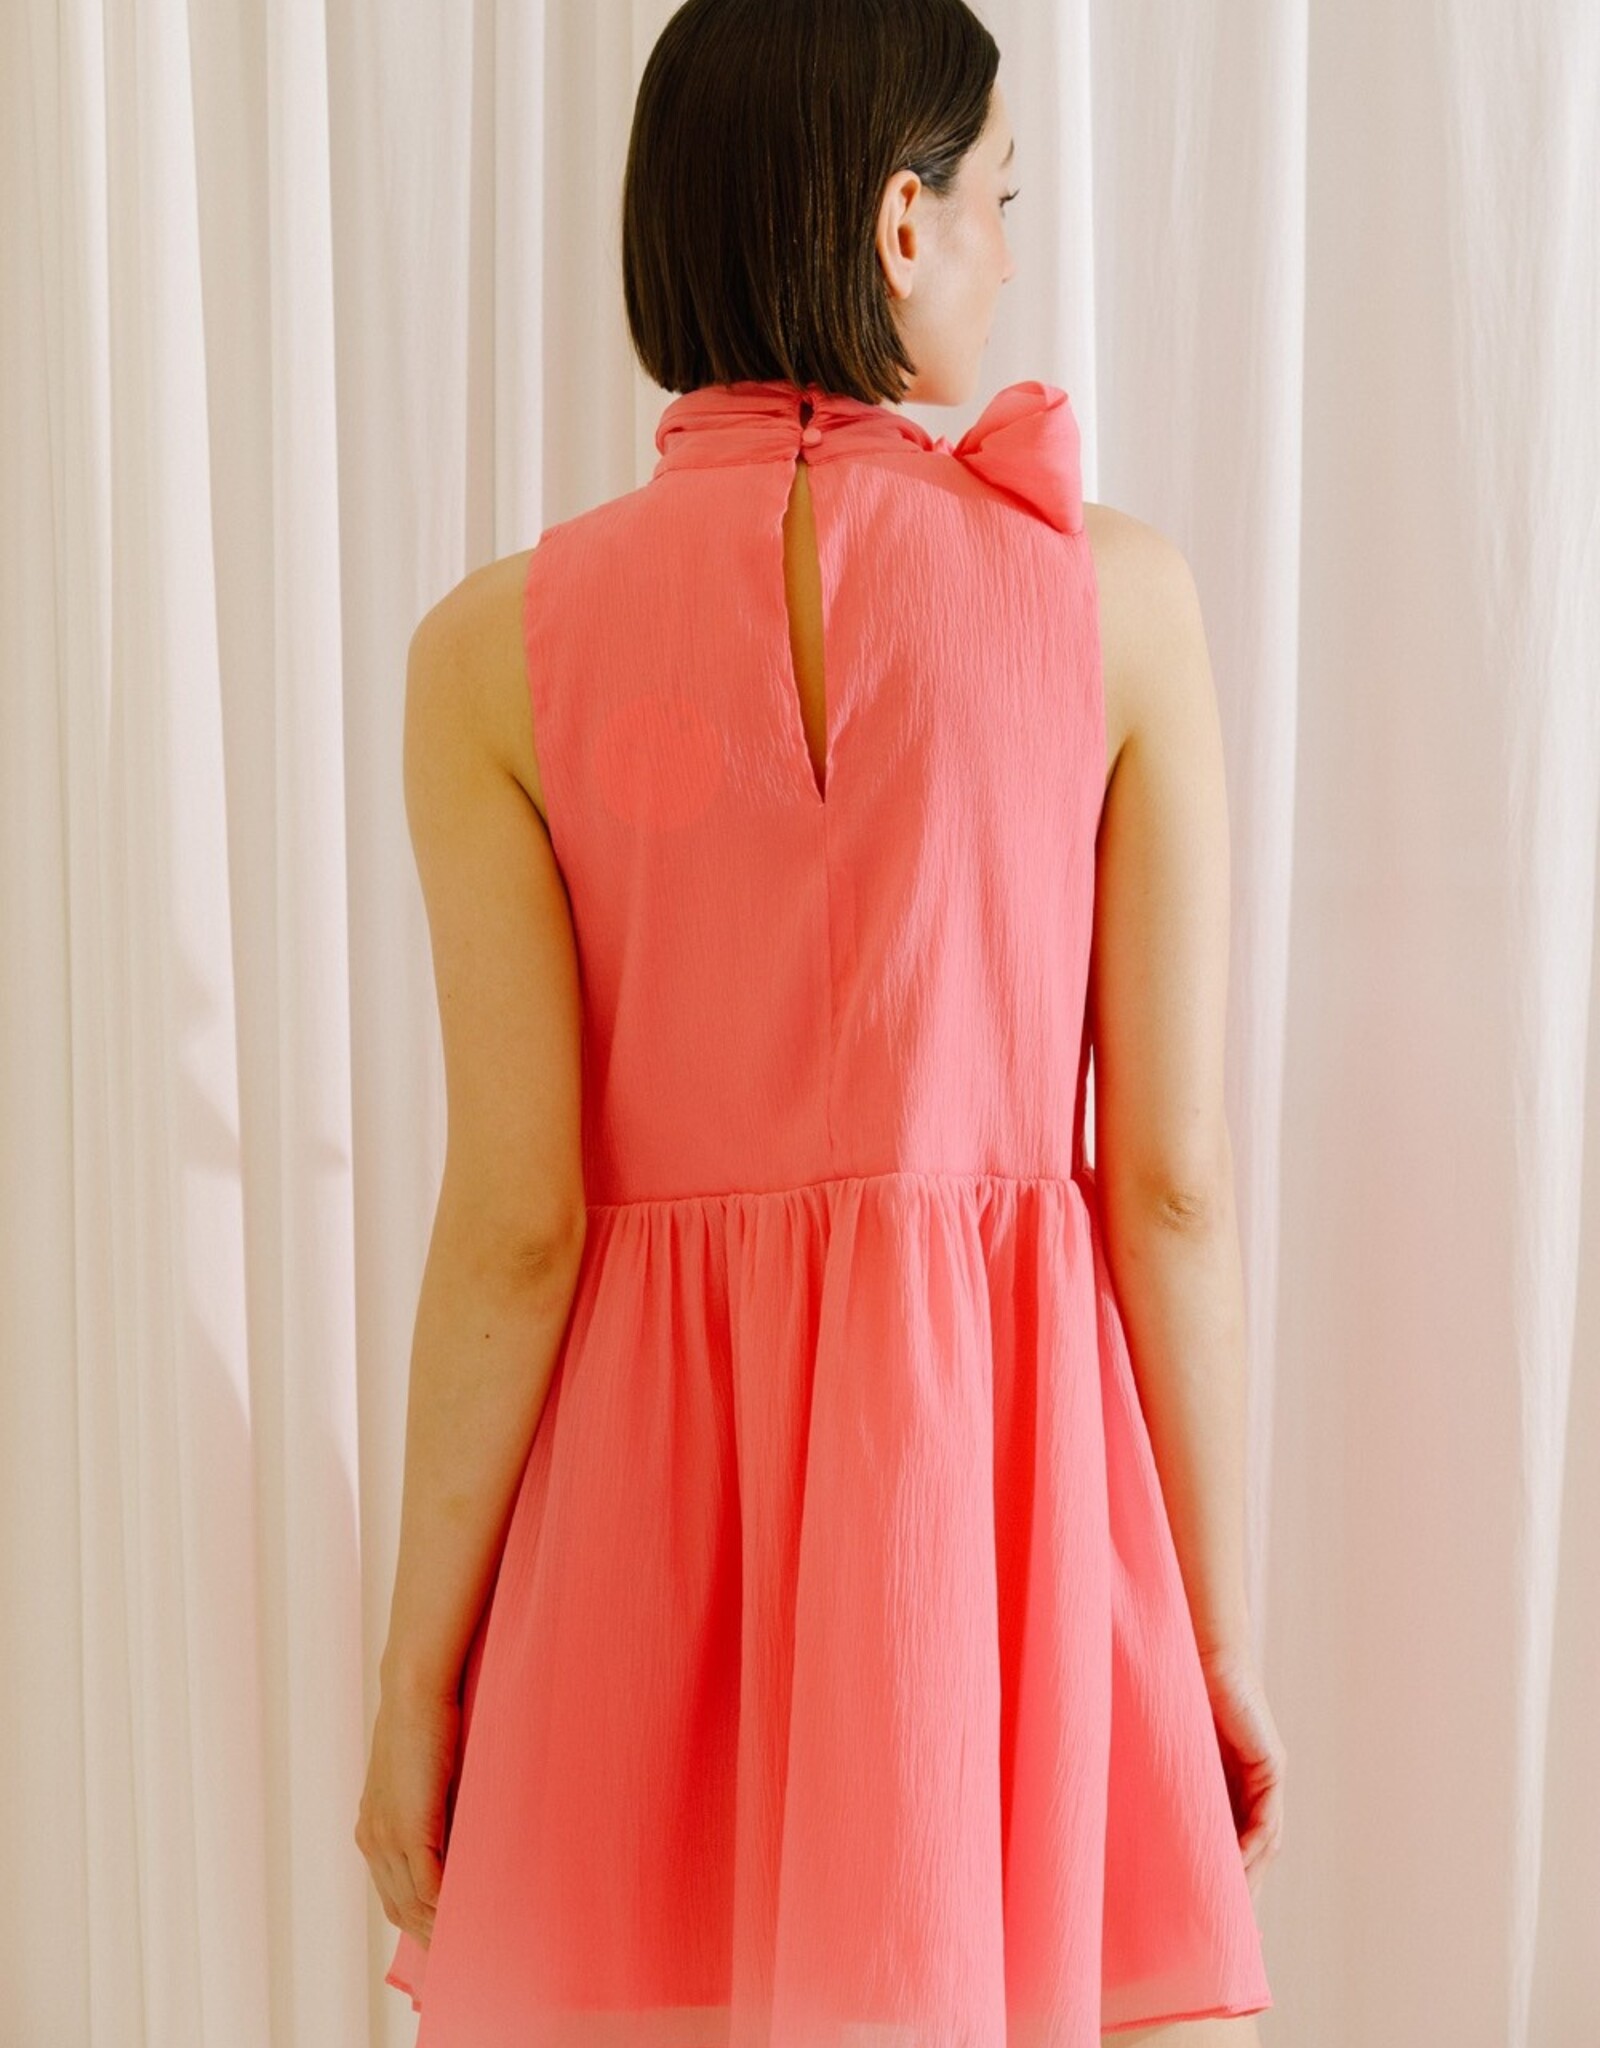 Storia Pink Crepe Bow Mini Dress